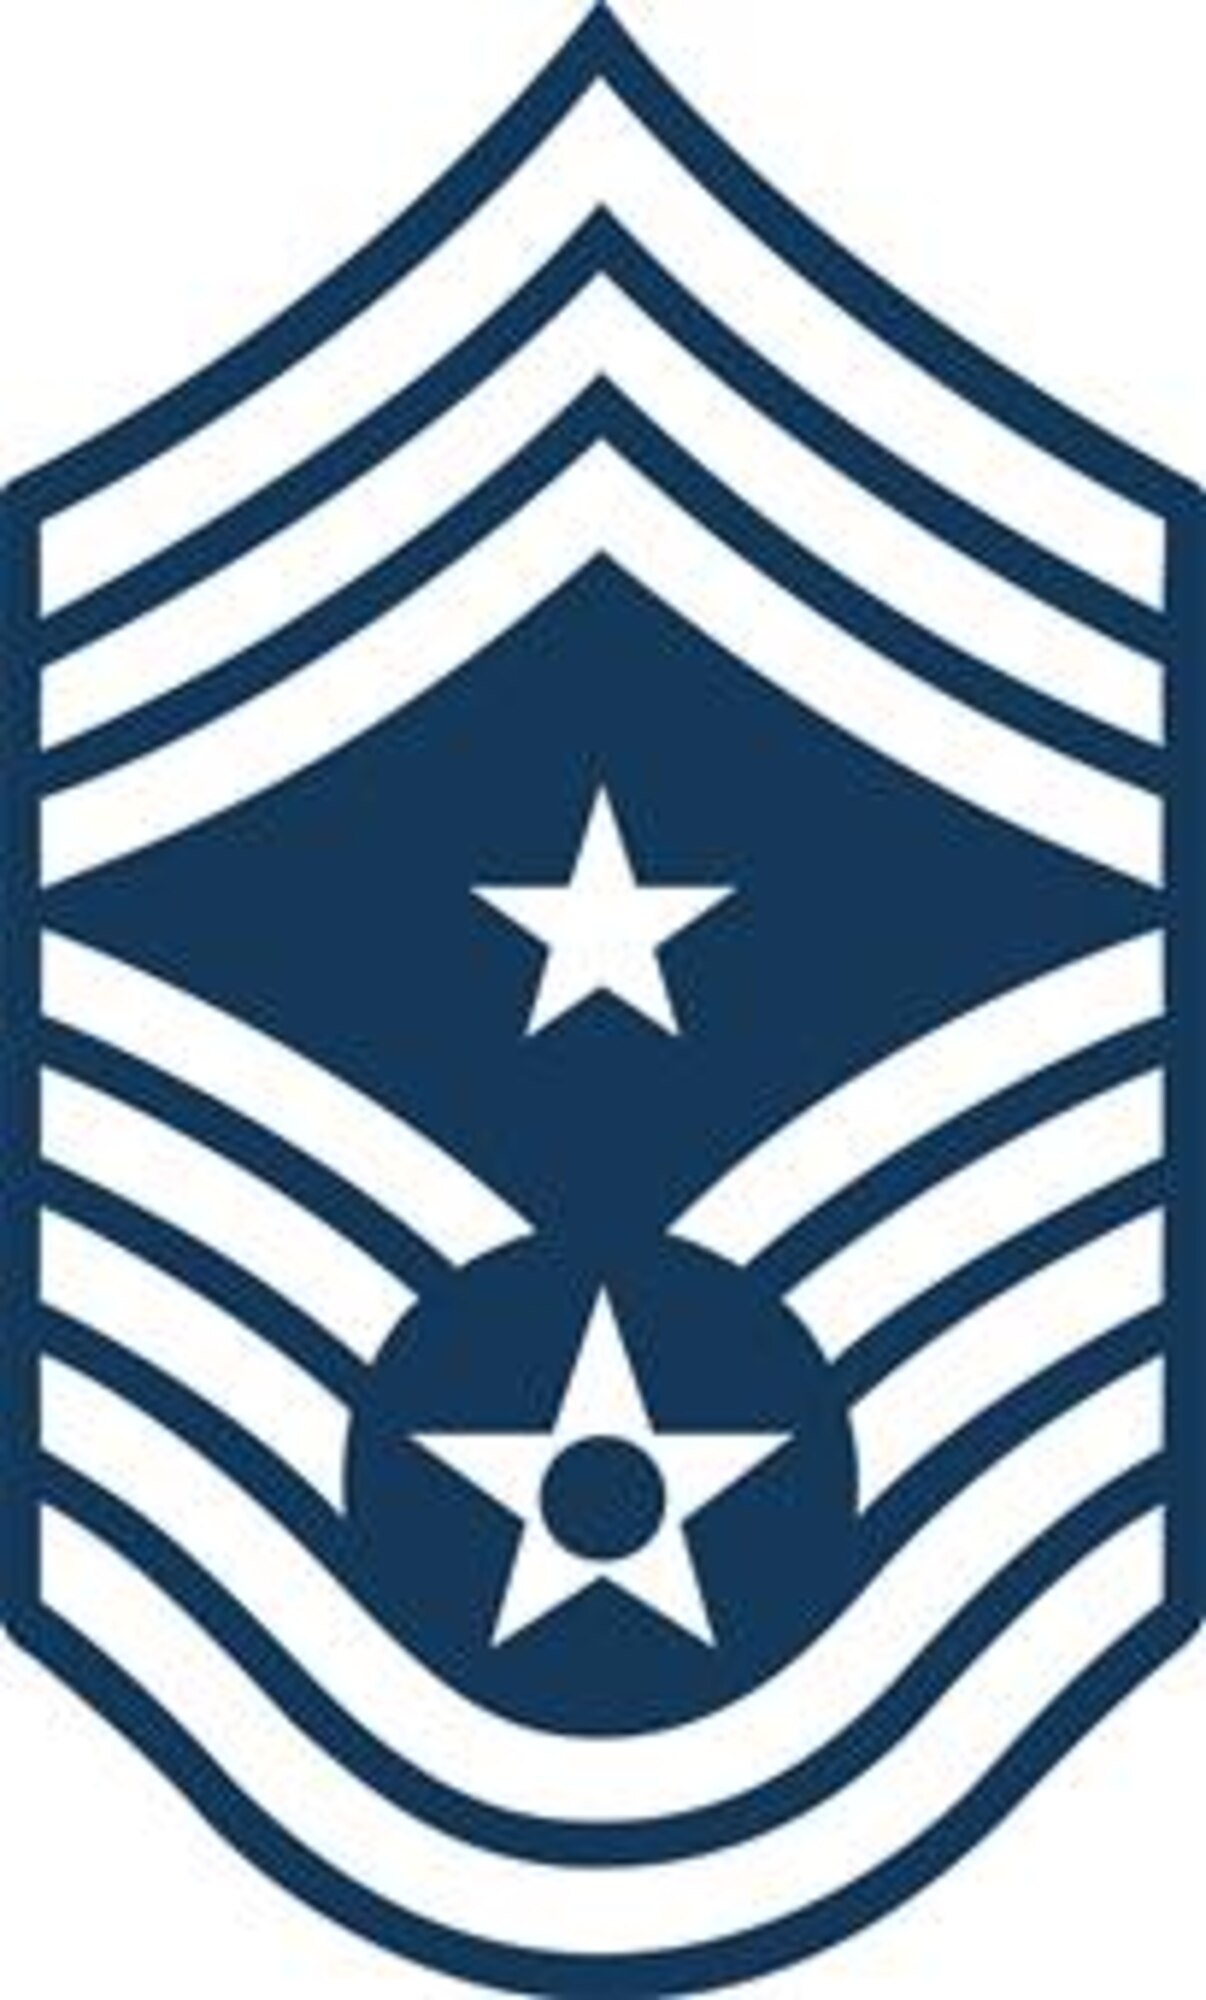 Command Chief Master Sgt (E-9)